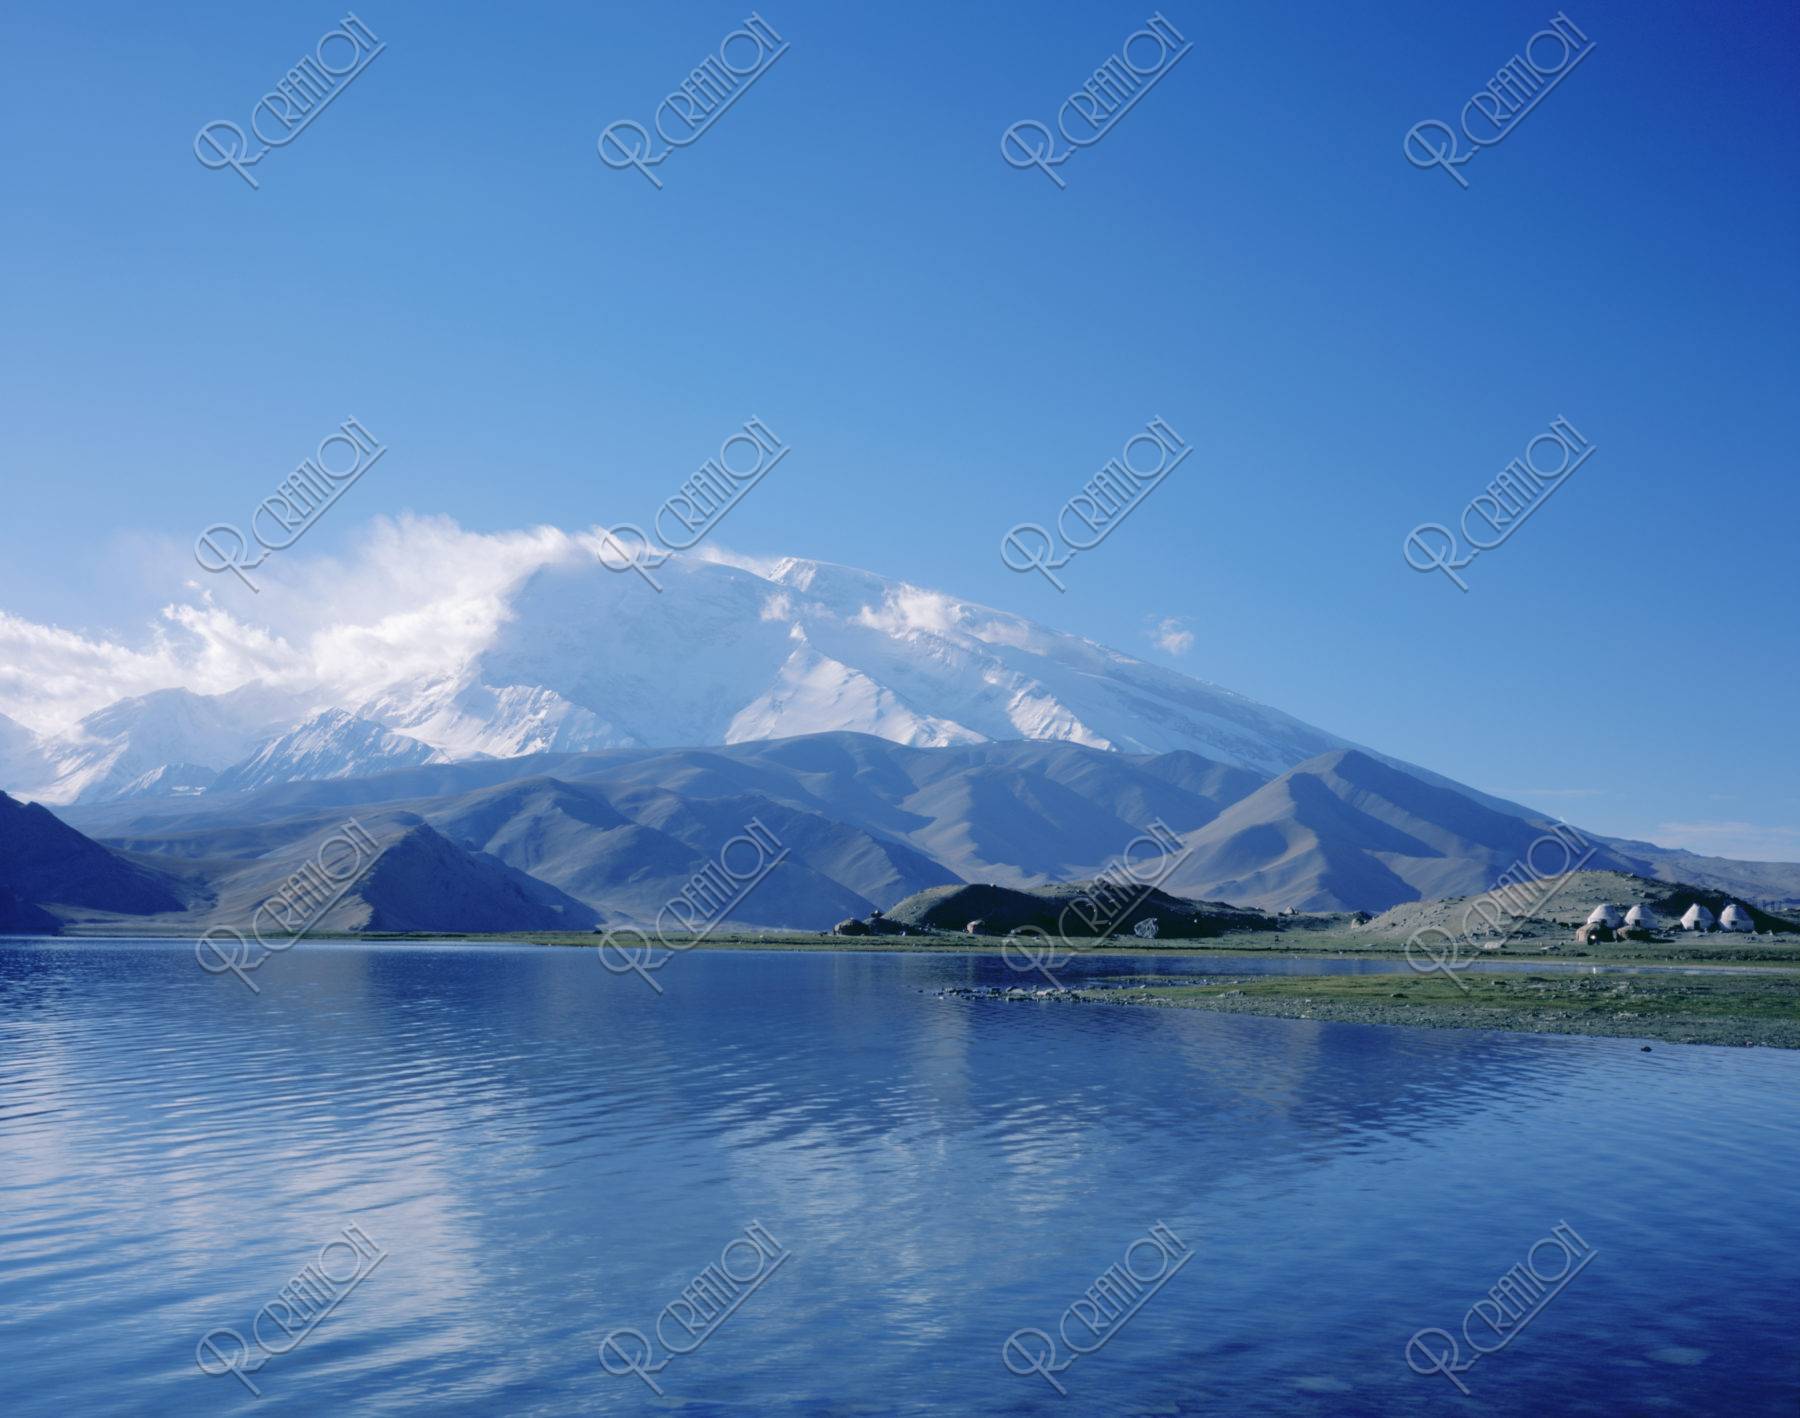 カラクリ湖とムスターグアタ山